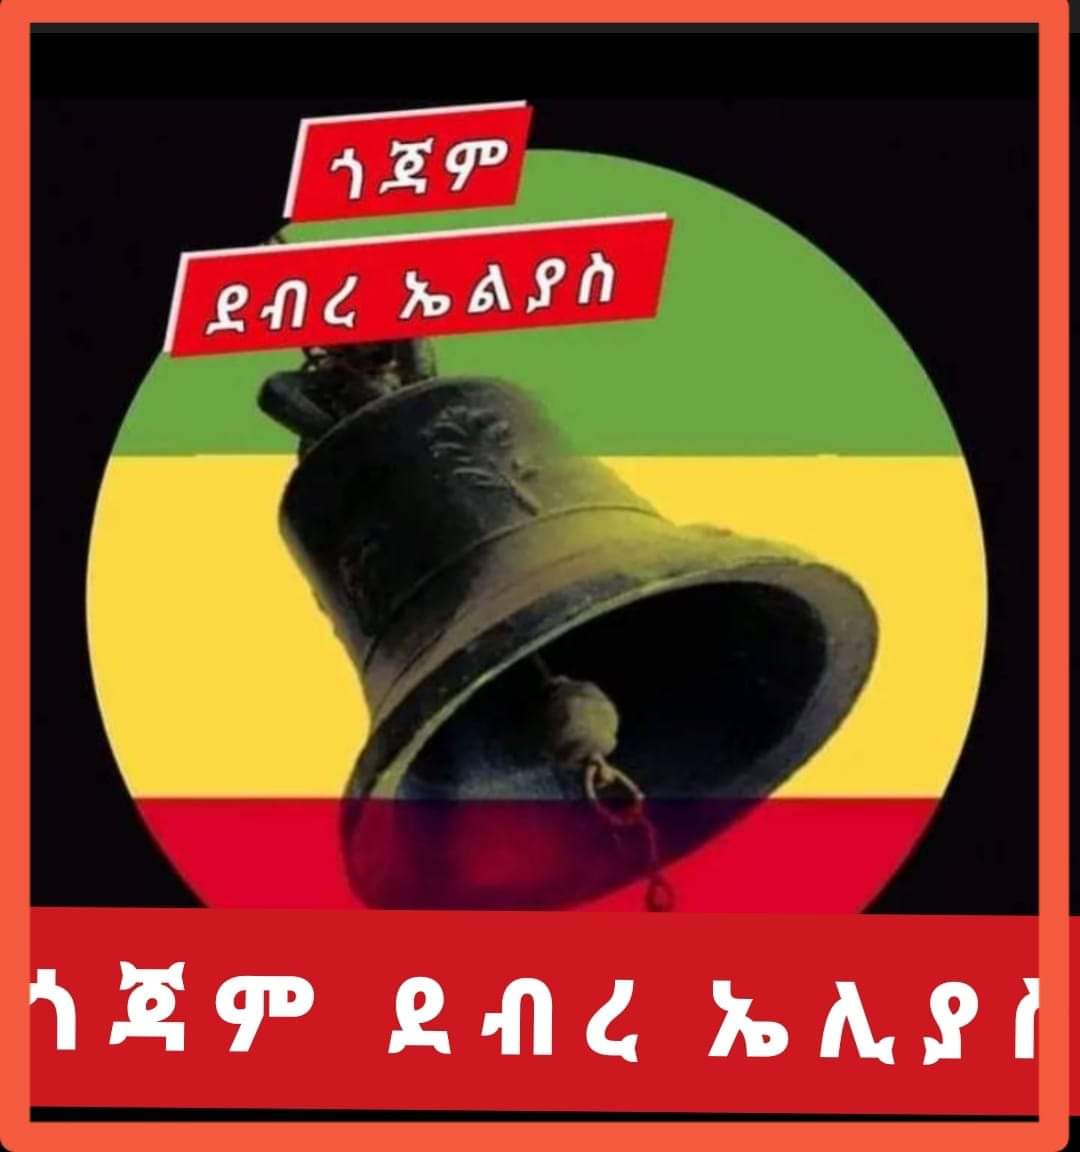 አረ ፓትሪያርኩ እስካሁን ካልሰሙ ንገሯቸው። ምነው ዝም ጭጭ ሆነ። #OrthodoxUnderAttackInEthiopia #DebreElias #ደብረኤልያስ